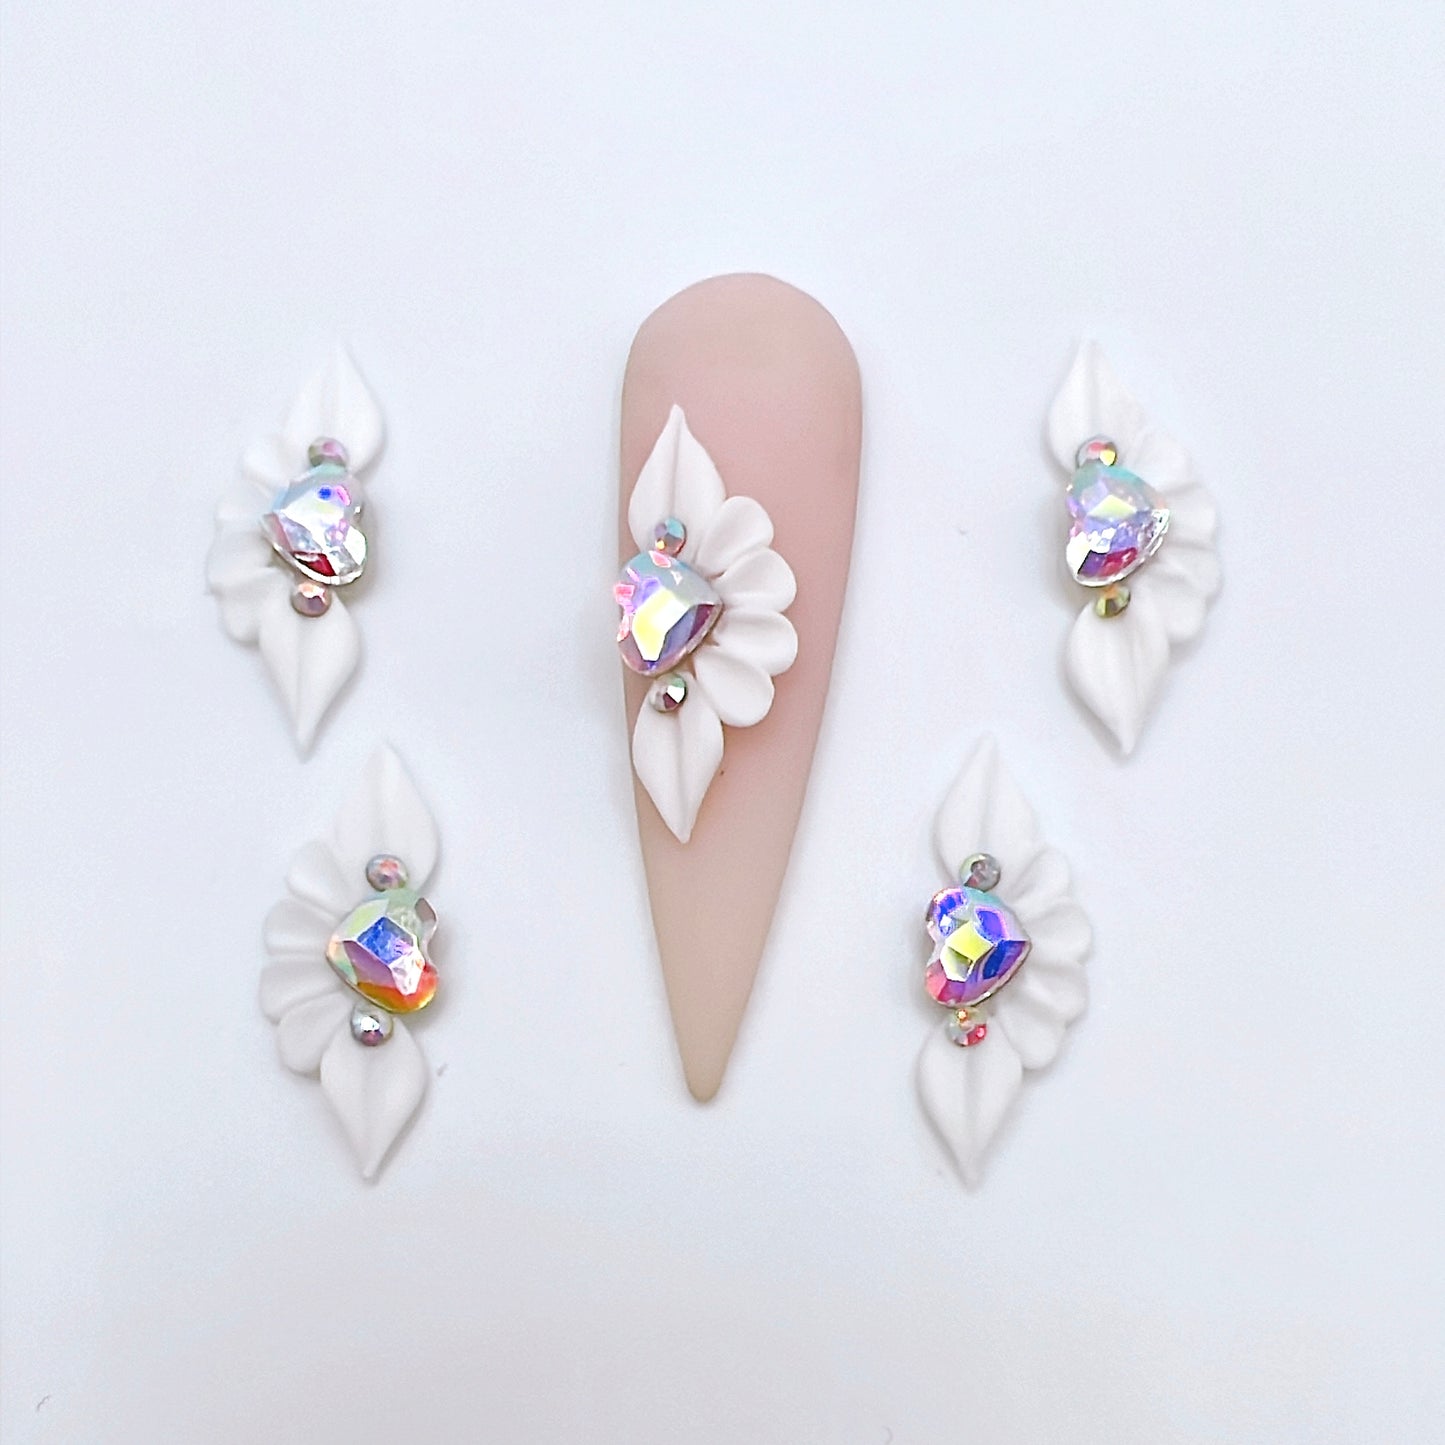 4pcs Long Petal 3D Acrylic Nail Flowers